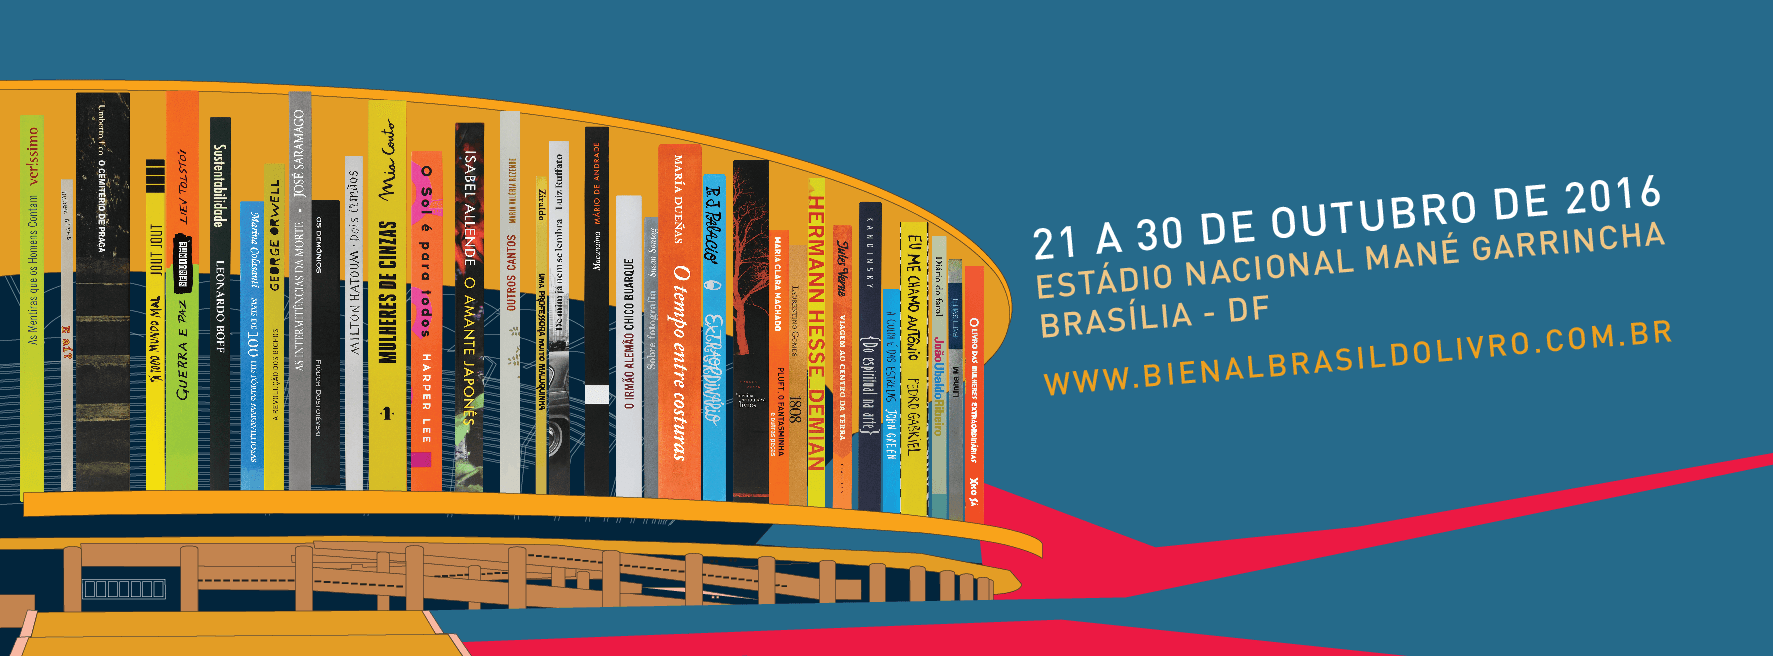 Bienal chega a Brasília com programação multicultural